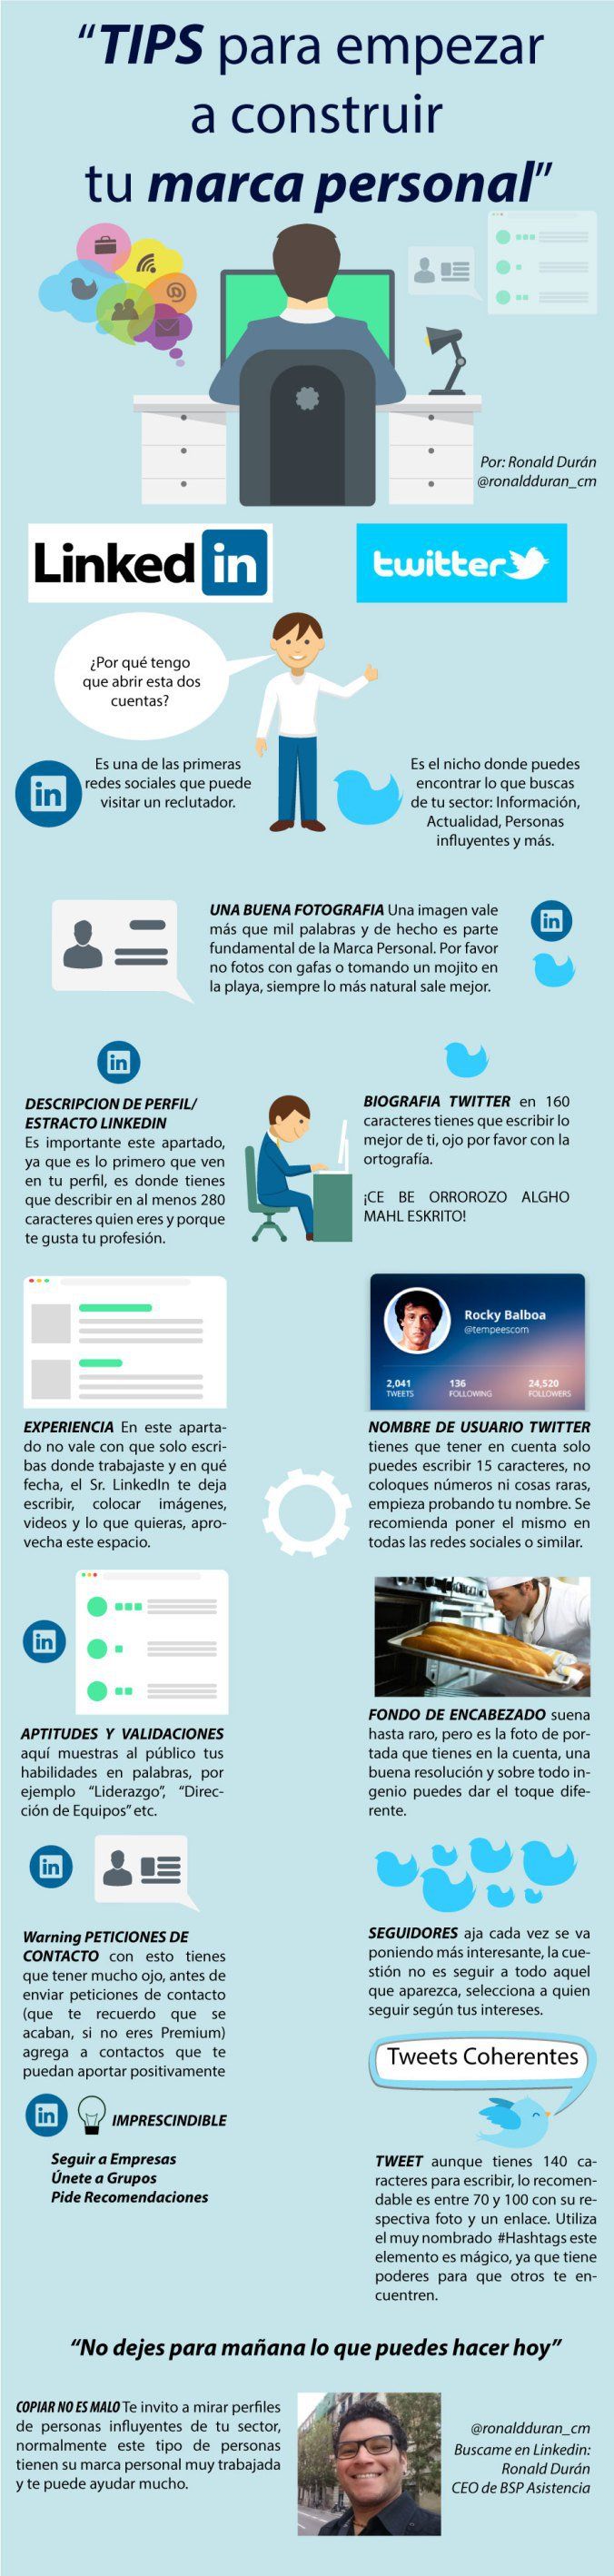 Consejos para construir tu Marca Personal #infografia en español. #CommunityMan...